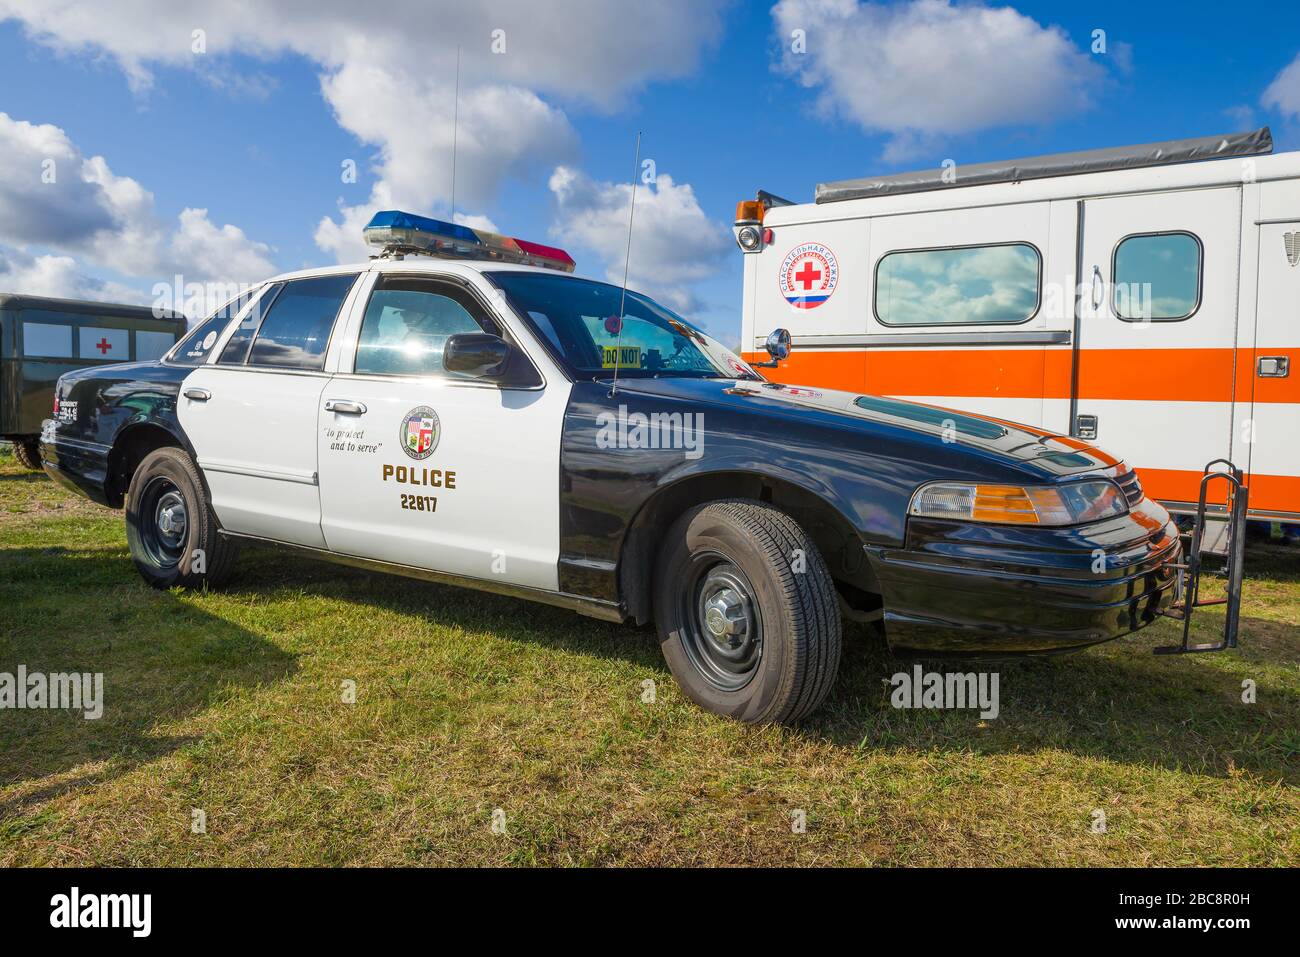 KRONSHTADT, RUSSIE - 14 SEPTEMBRE 2019: La voiture de police américaine classique Ford Crown Victoria police Interceptor gros plan. Membre du fe de transport rétro Banque D'Images